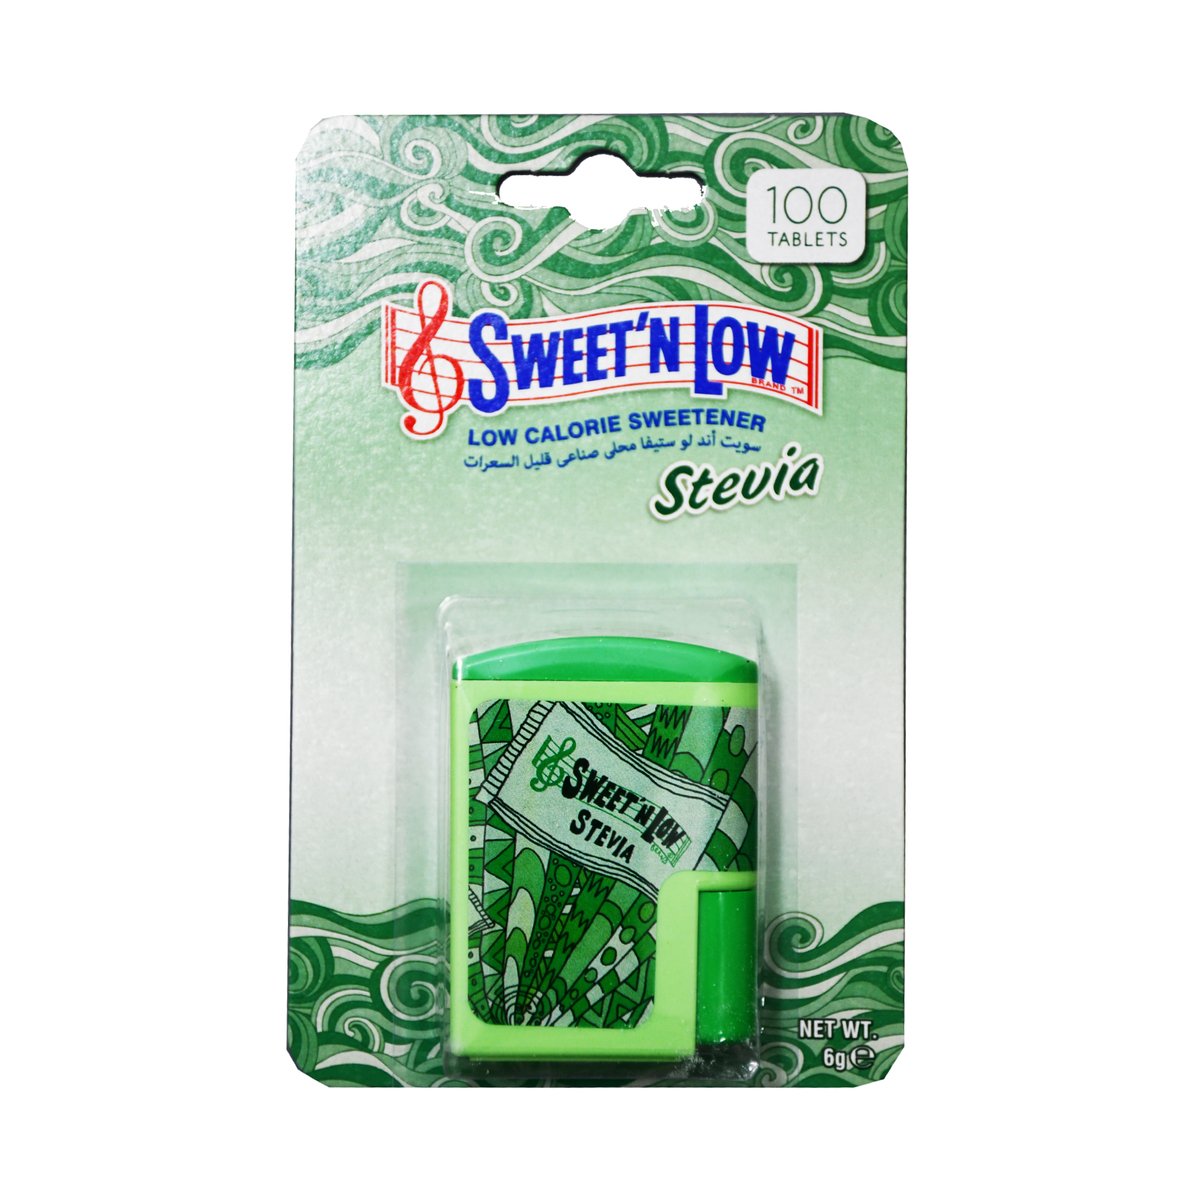 Sweet N Low Stevia Low Calorie Sweetener 6g